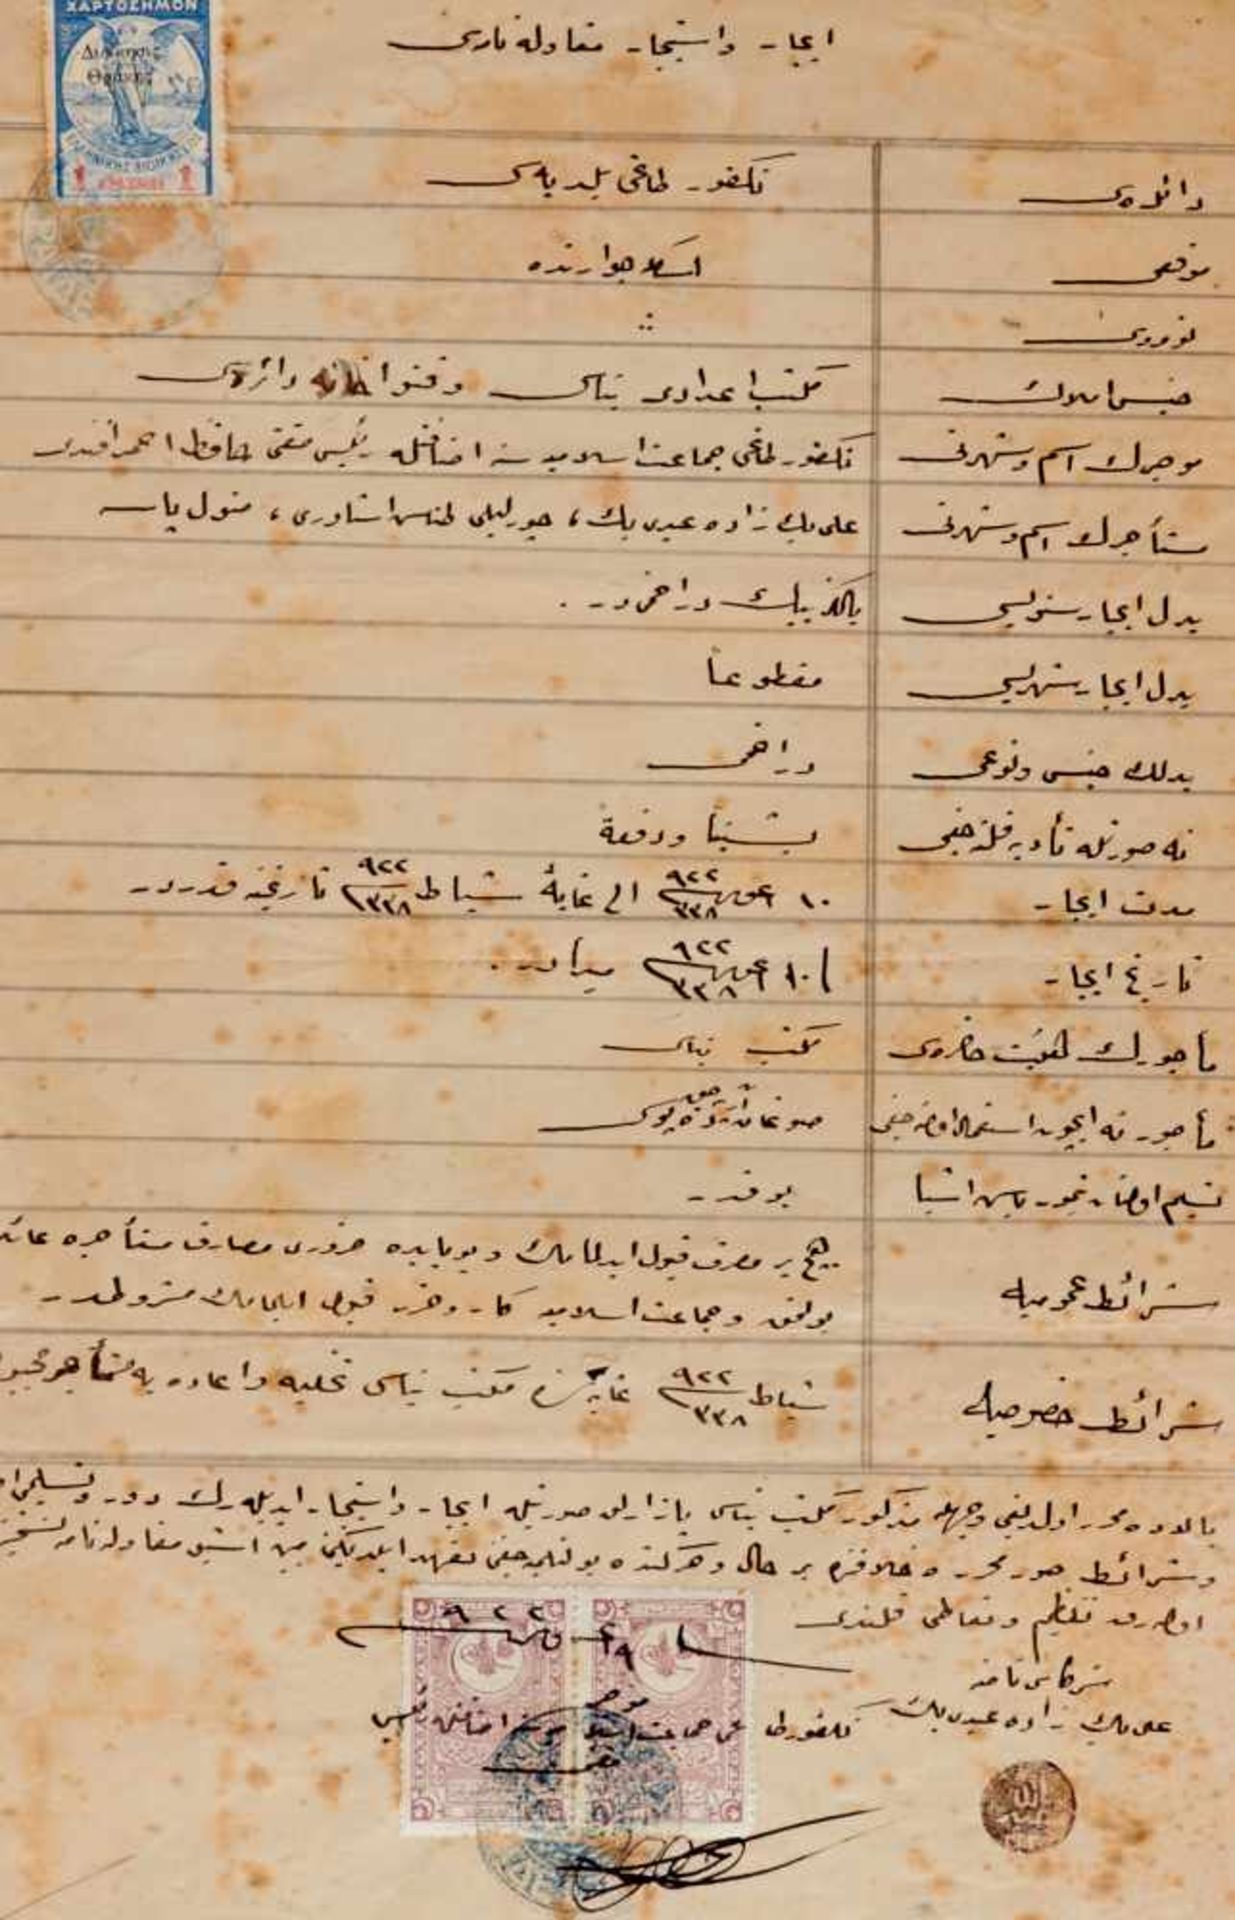 Osmanisches Reich Sammlung - Ca. 70 türkische Dokumente und Briefe, meistgedruckte Formulare hs. - Bild 5 aus 7